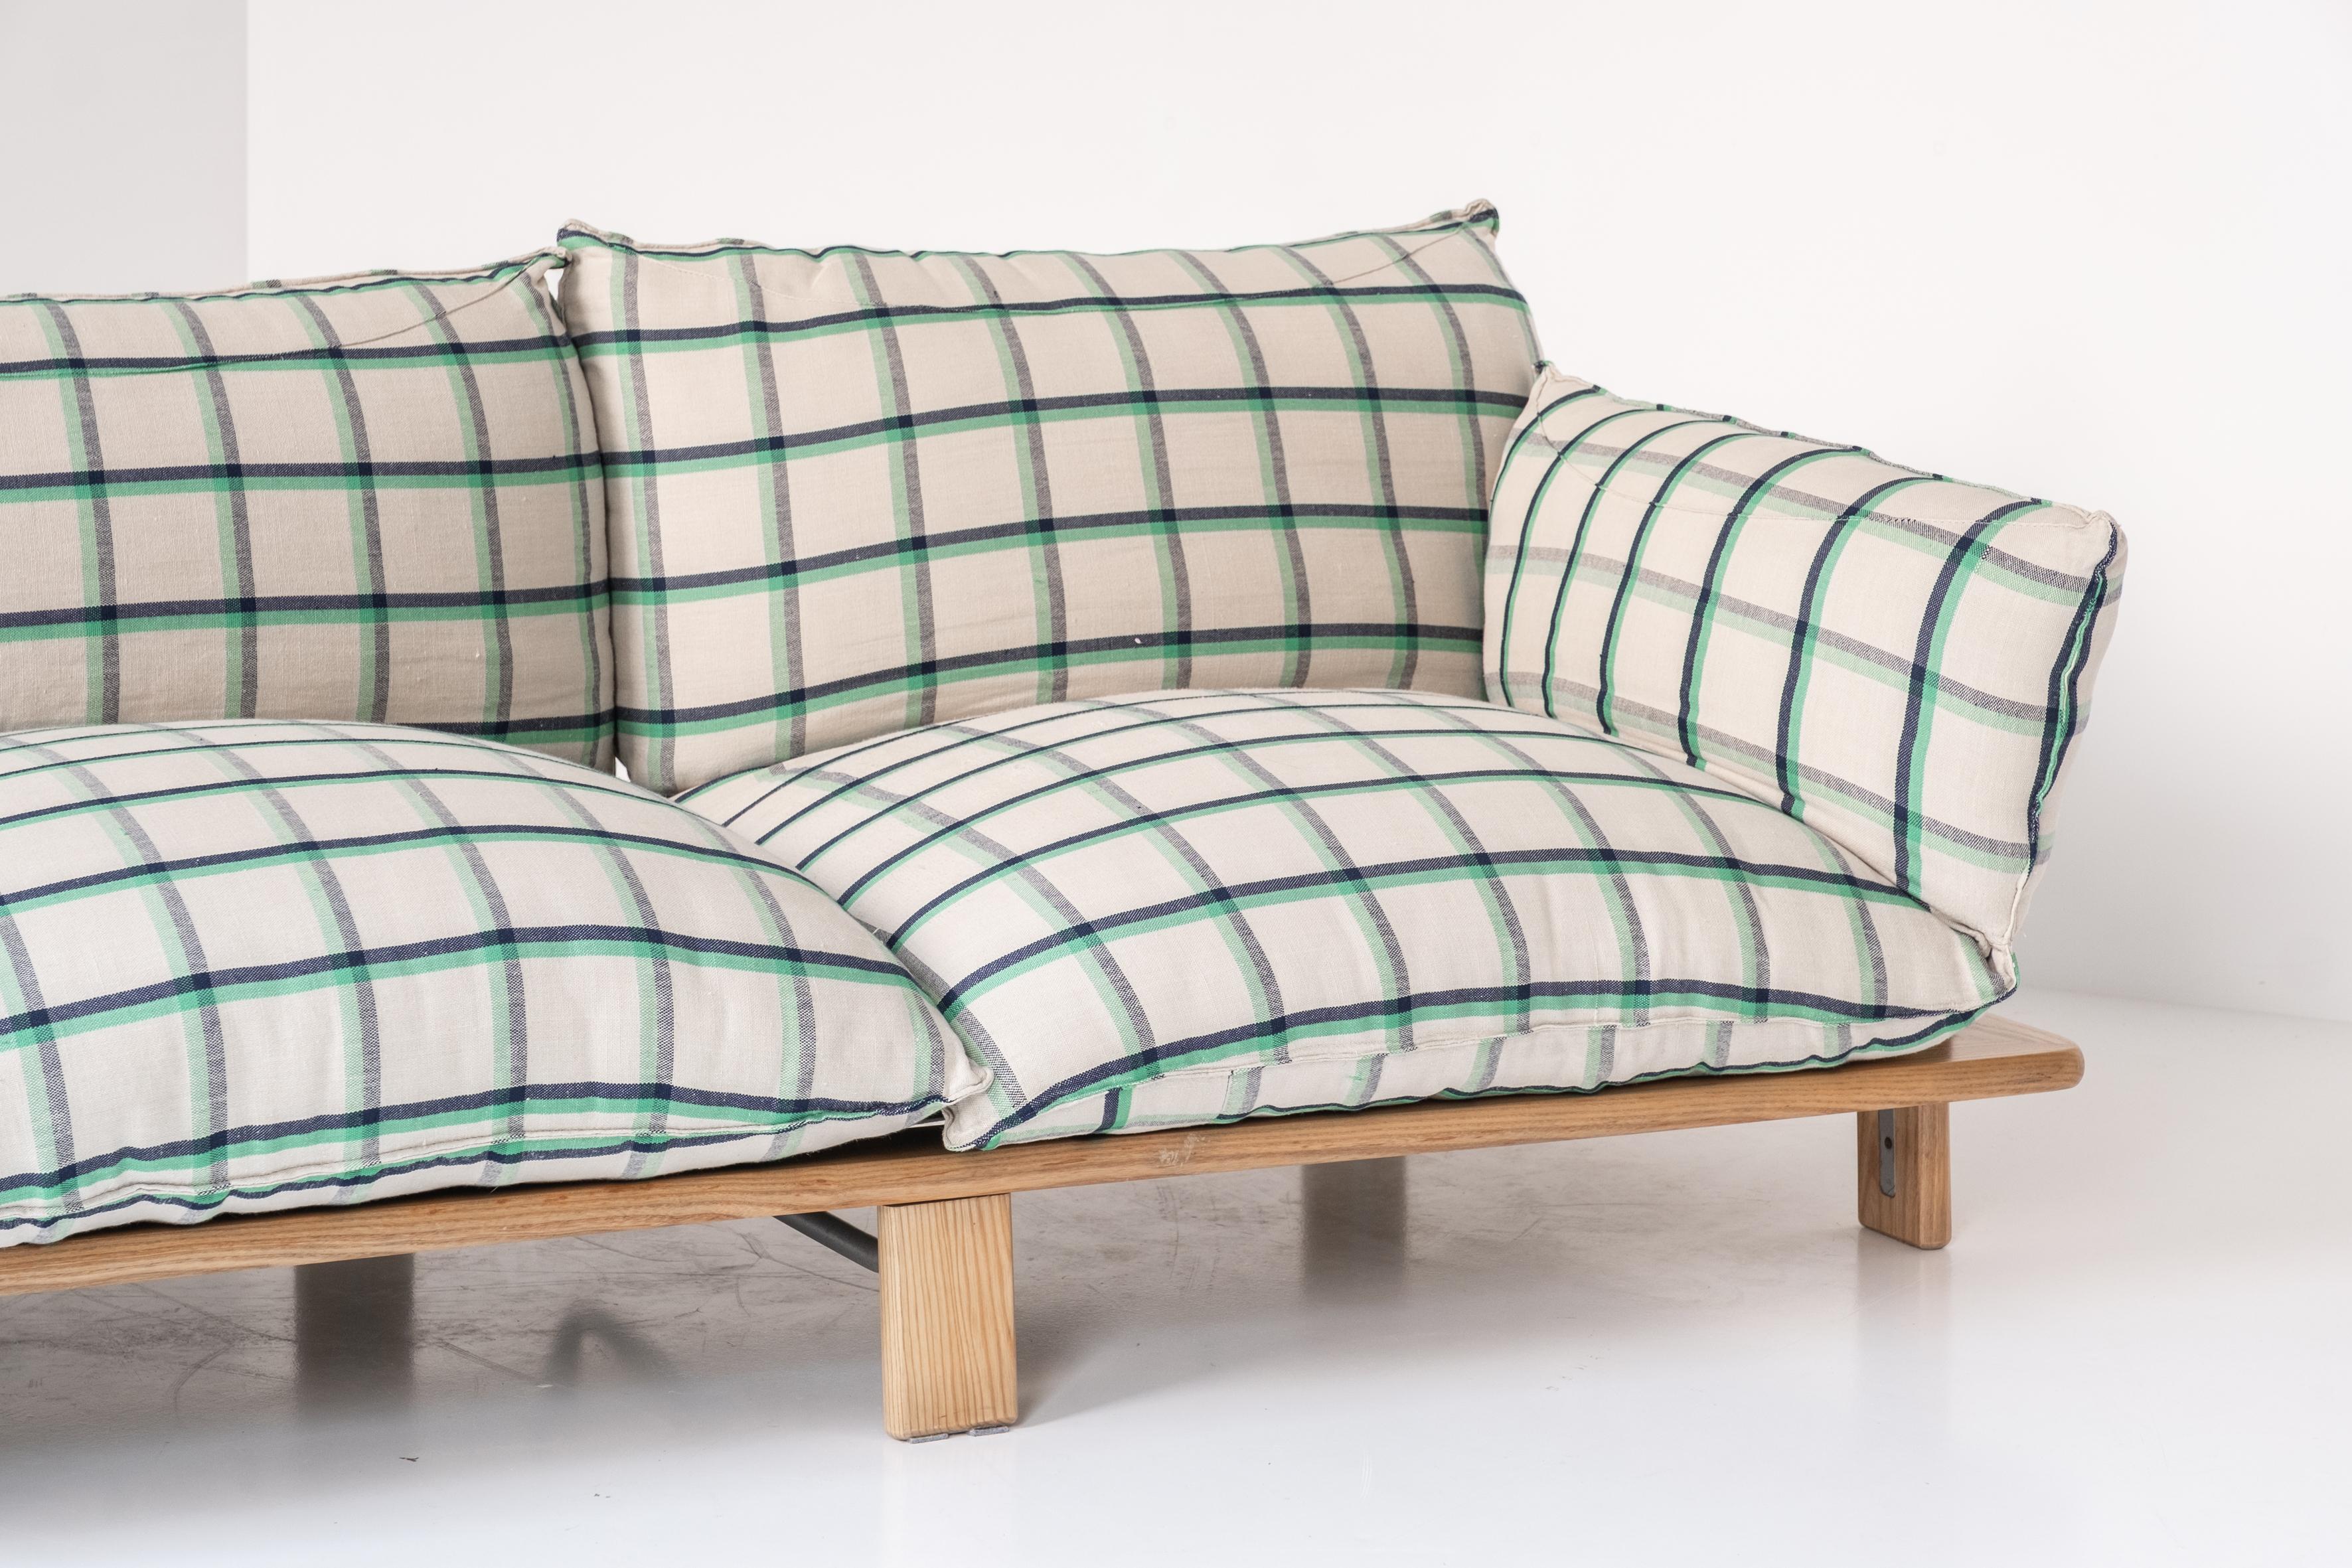 Fabric Very rare three seater sofa by Giovanni Offredi for Saporiti, Italy 1970s.